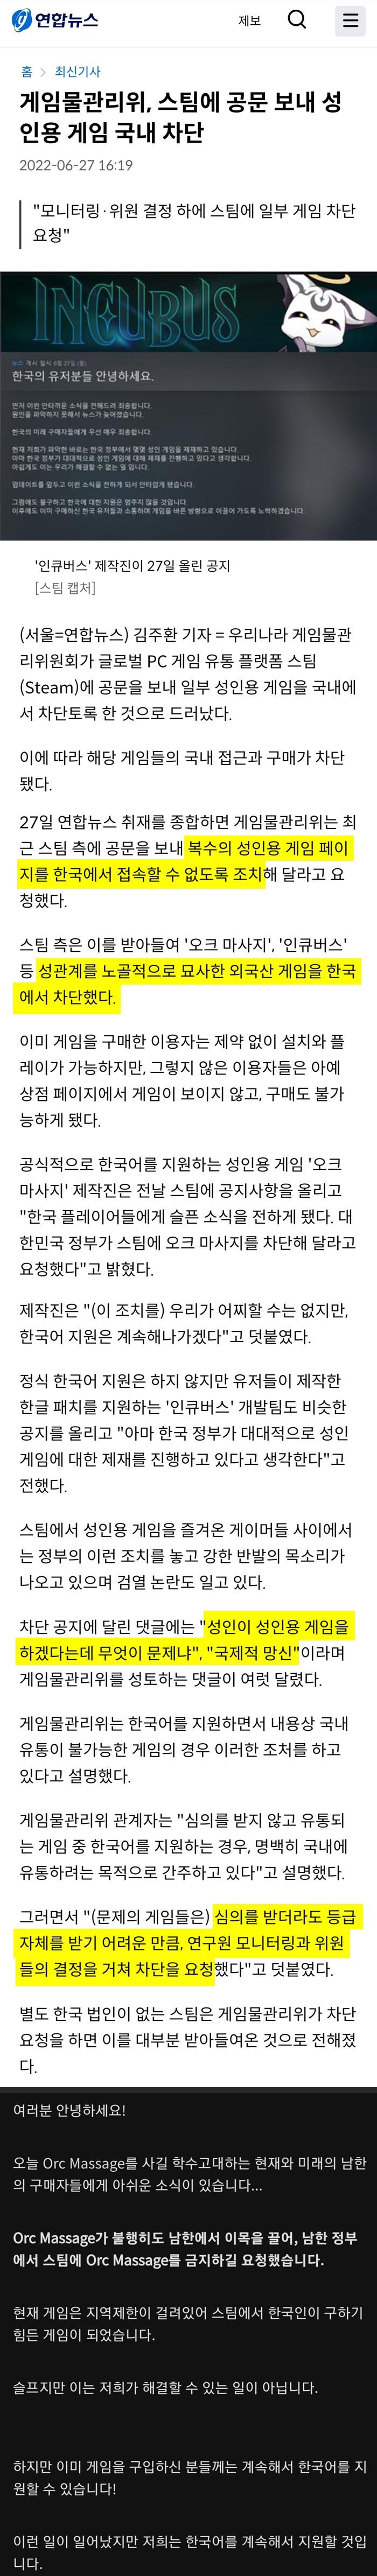 [유머] 한국 스팀 ㅅㅇ게임 금지 사태 -  와이드섬